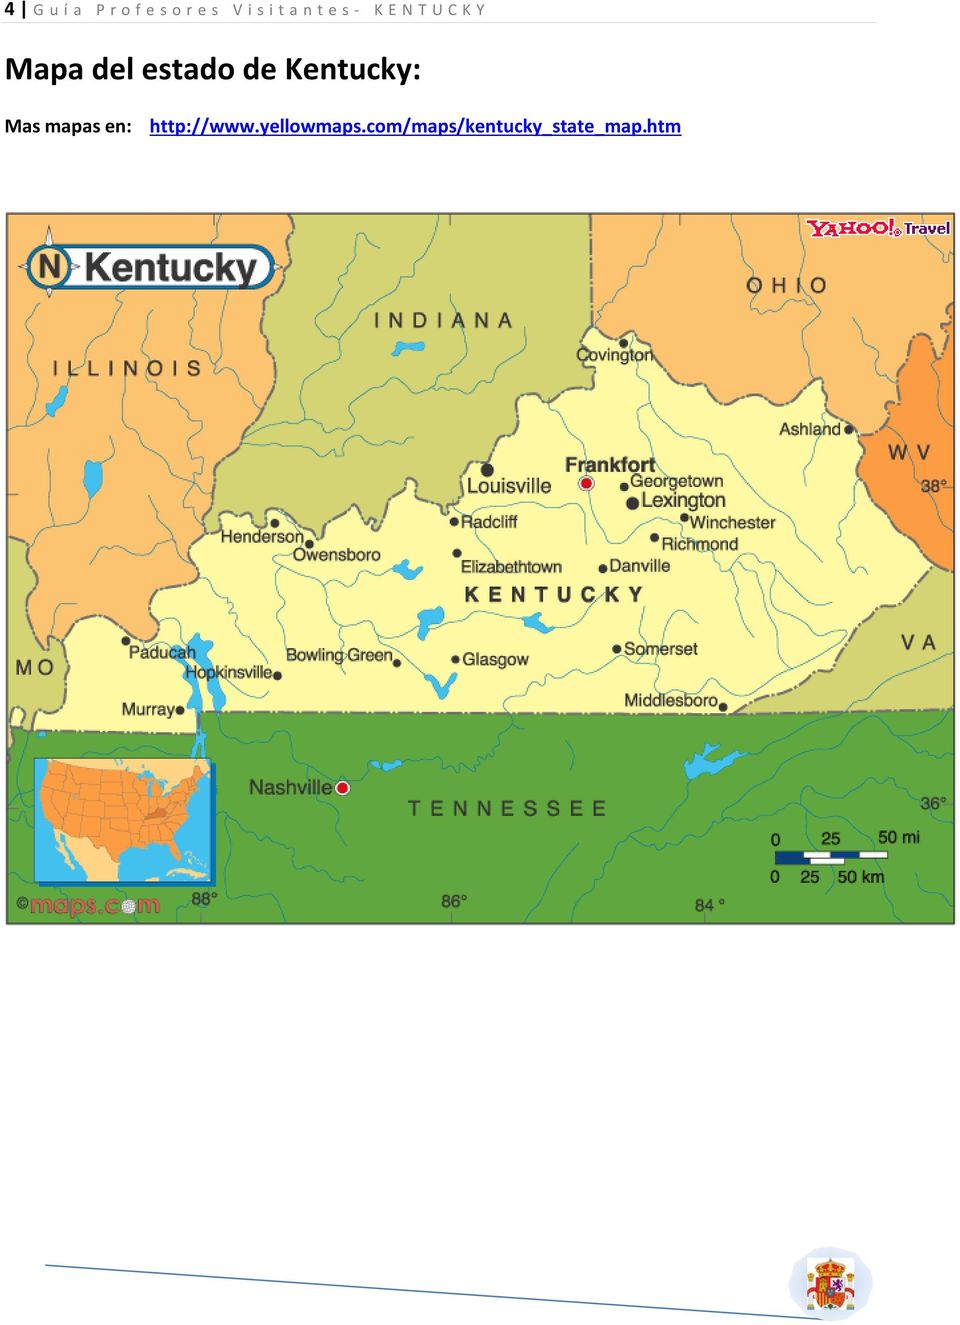 Kentucky: Mas mapas en: